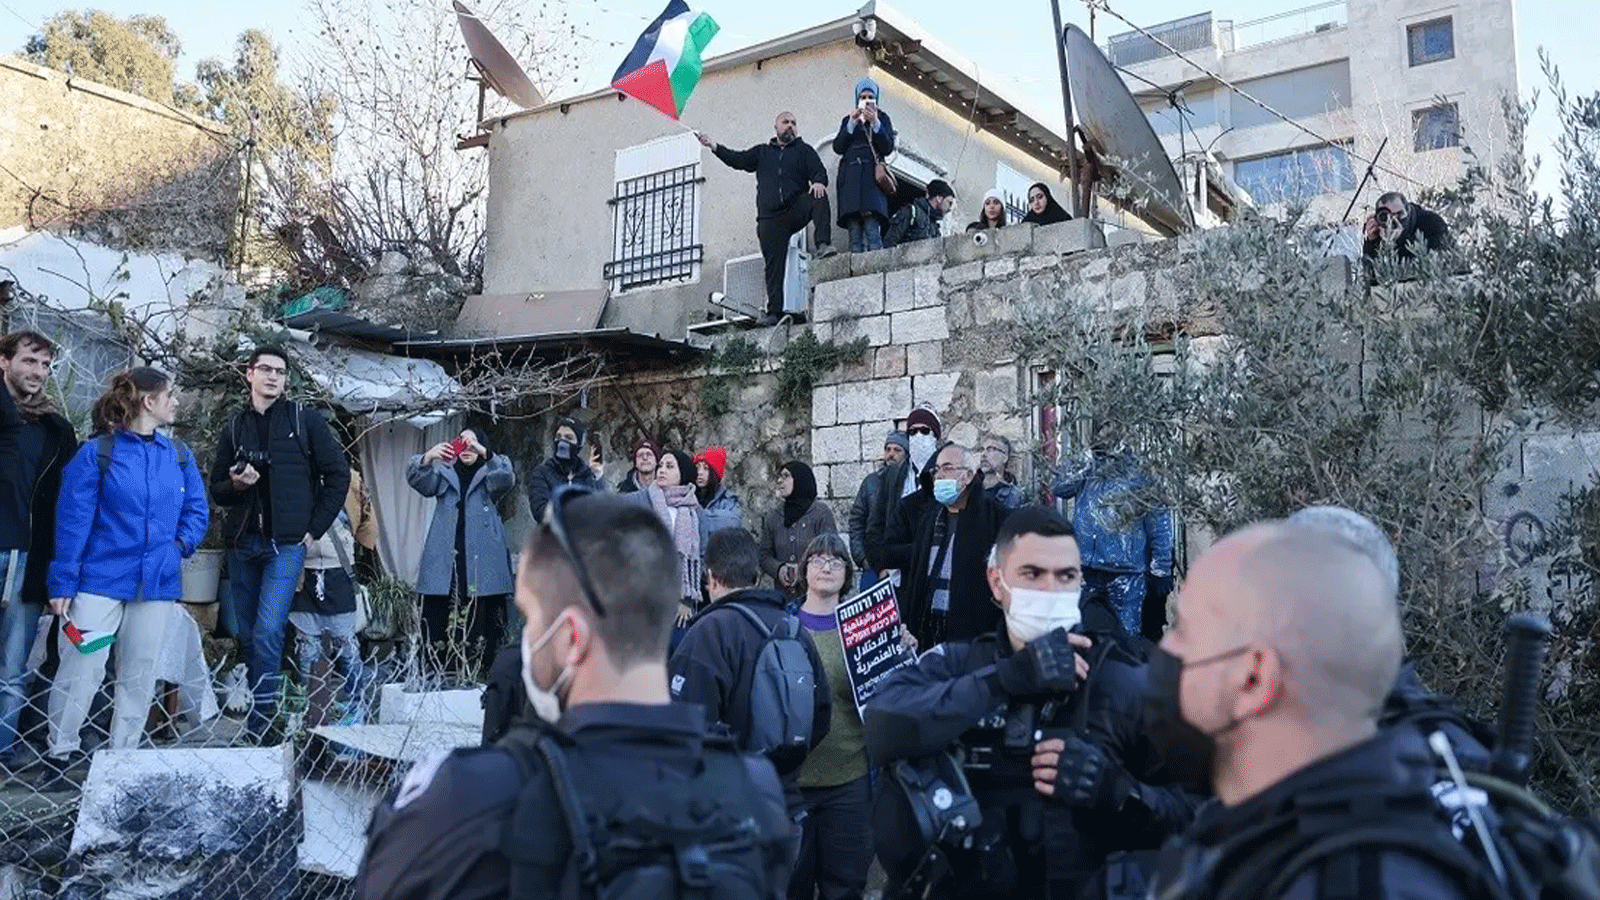  قوات الأمن الإسرائيلية تنتشر فيما يتظاهر نشطاء فلسطينيون وإسرائيليون وأجانب حول منزل عائلة سالم خلال مظاهرة في حي الشيخ جراح في القدس الشرقية. 21 كانون الثاني\يناير 2022